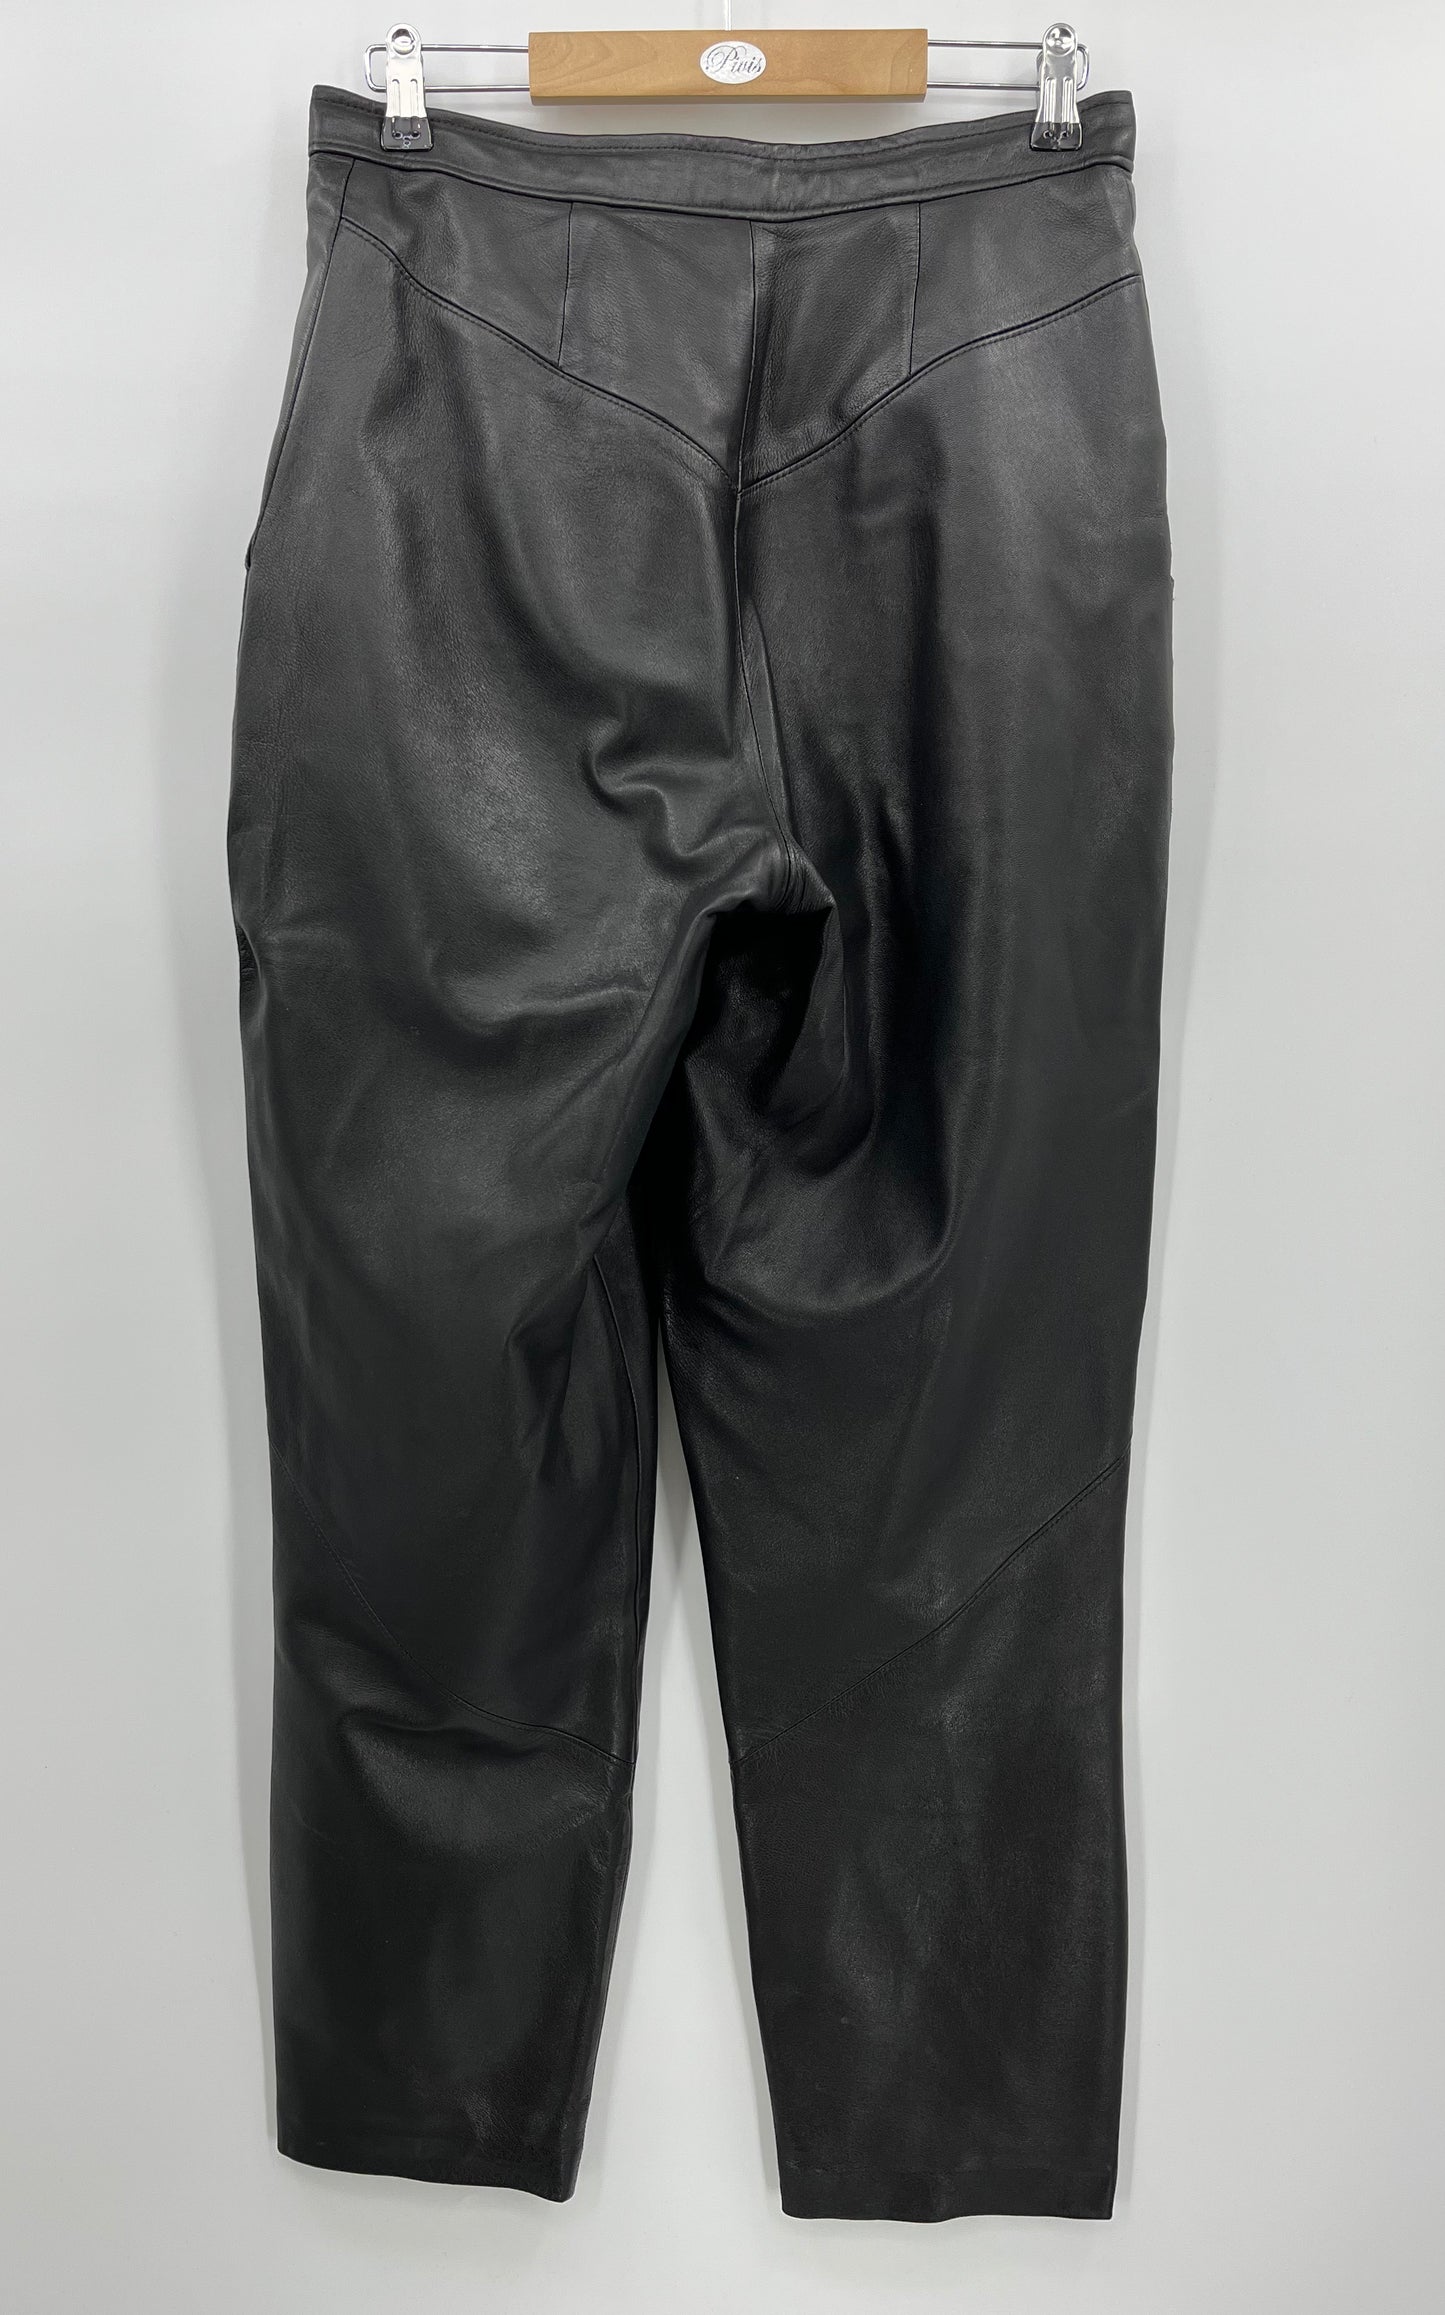 Mustat tekonahkahousut, 80-90-luku, vyöt.ymp. 76cm, kokoarvio 38(40)